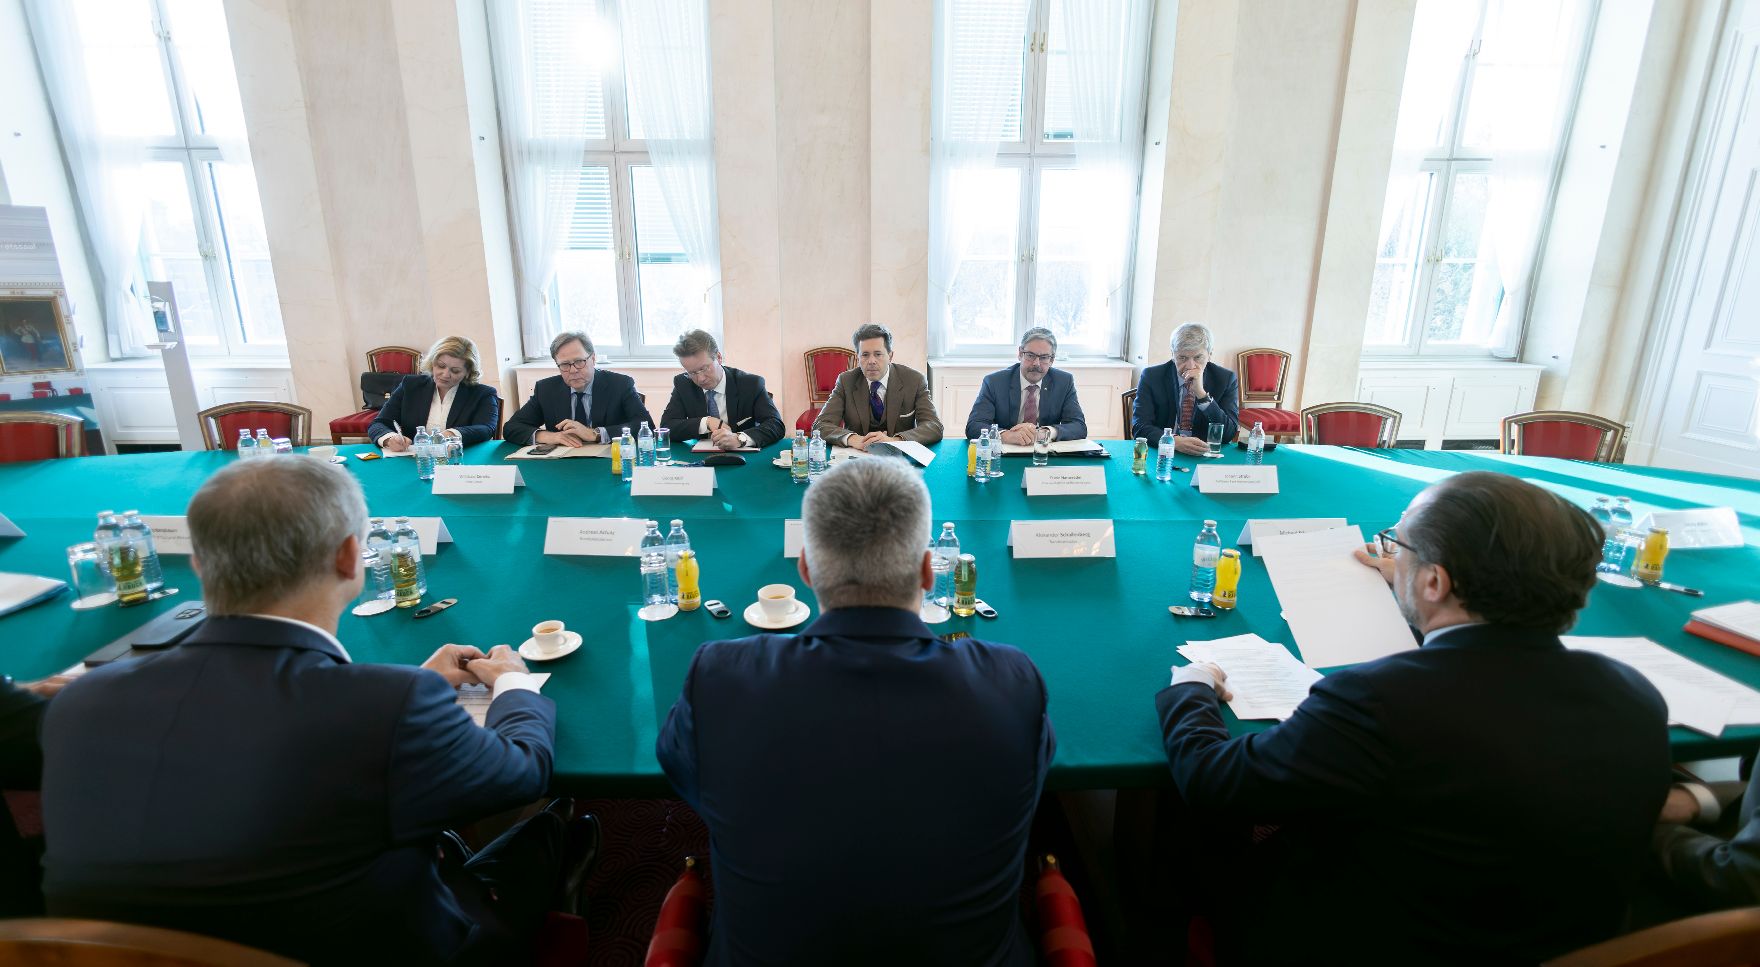 Am 13. Dezember 2022 lud Bundeskanzler Karl Nehammer gemeinsam mit Bundesminister Alexander Schallenberg und Bundesminister Martin Kocher Vertreterinnen und Vertreter der Wirtschaft zu einem Gespräch ein.